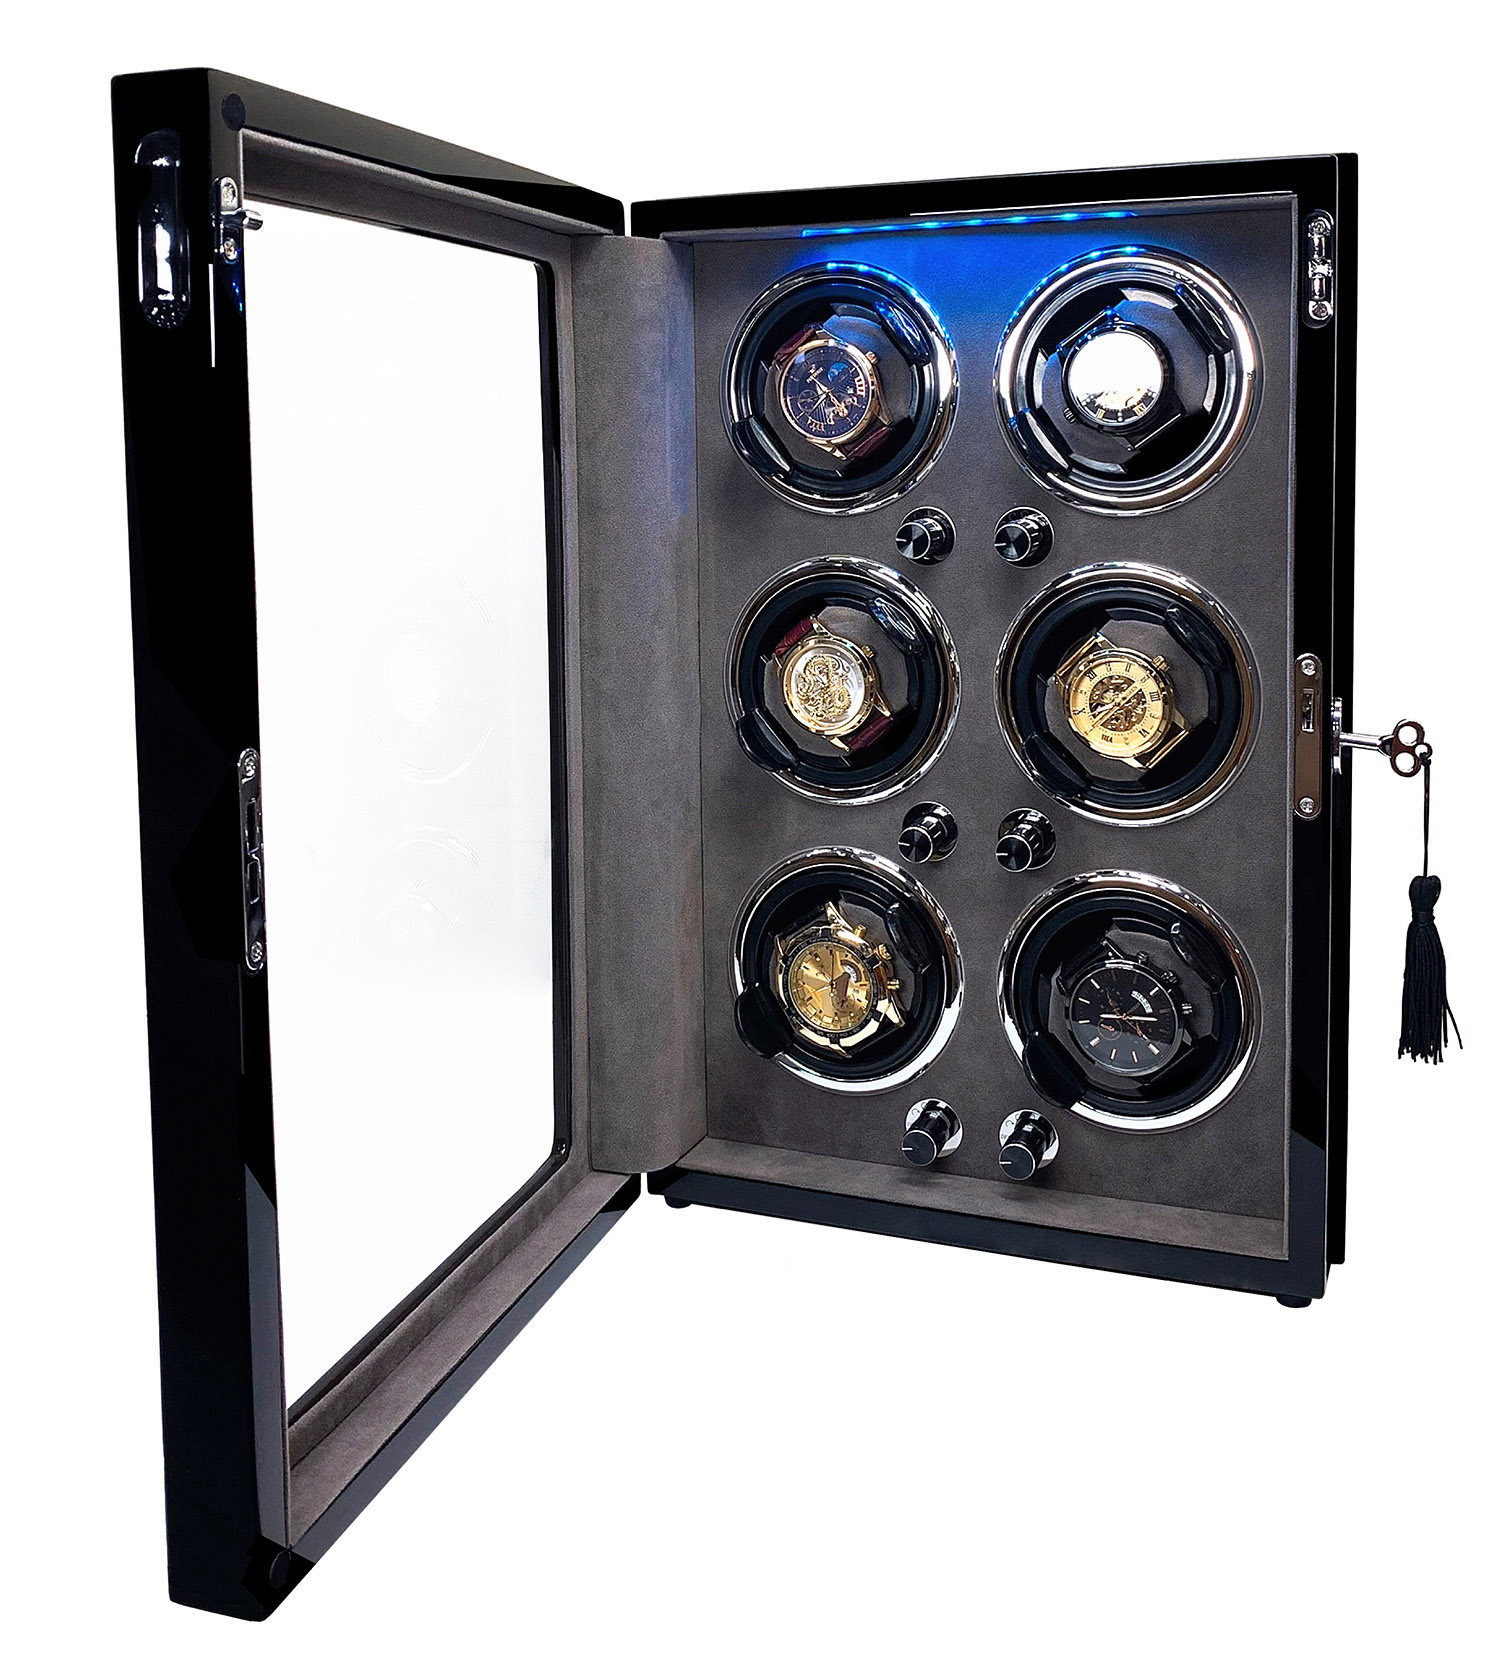 Tủ xoay đồng hồ cơ tự động ACBOW 6 ngăn cao cấp vỏ gỗ - lót nhung xám - đèn LED